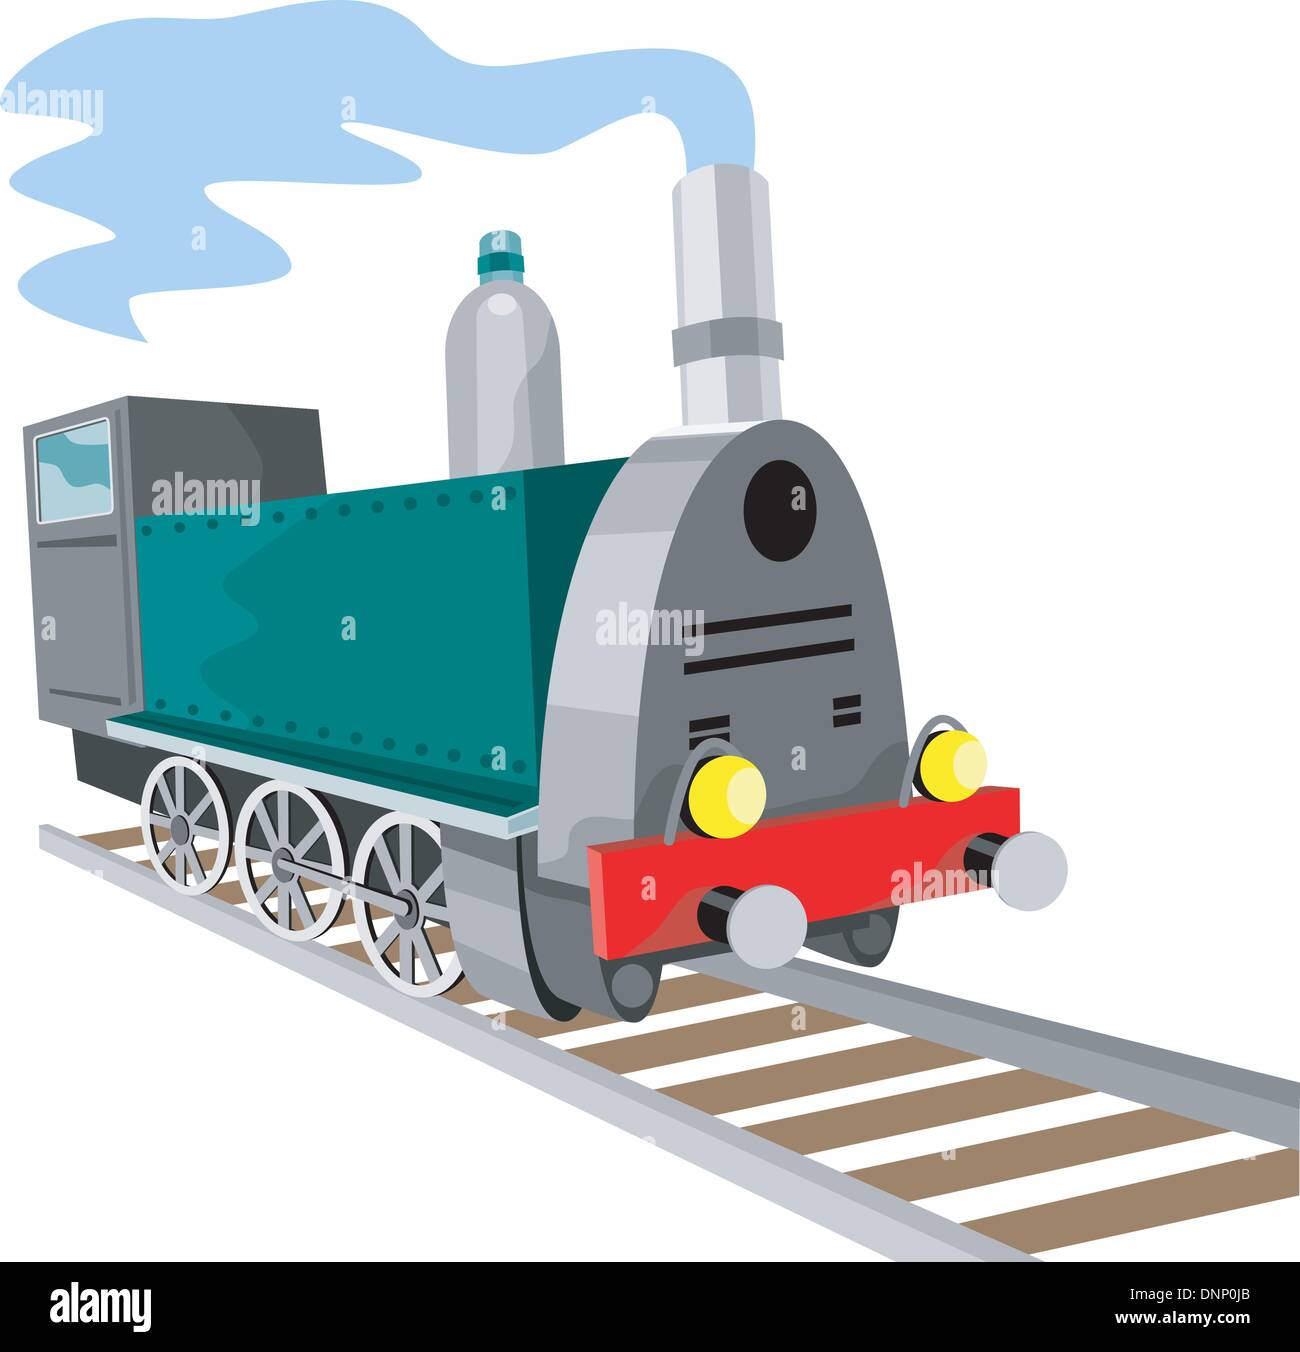 Illustration einer Dampf Zug Lokomotive demnächst auf Eisenbahn im retro-Stil auf isolierte Hintergrund getan. Stock Vektor